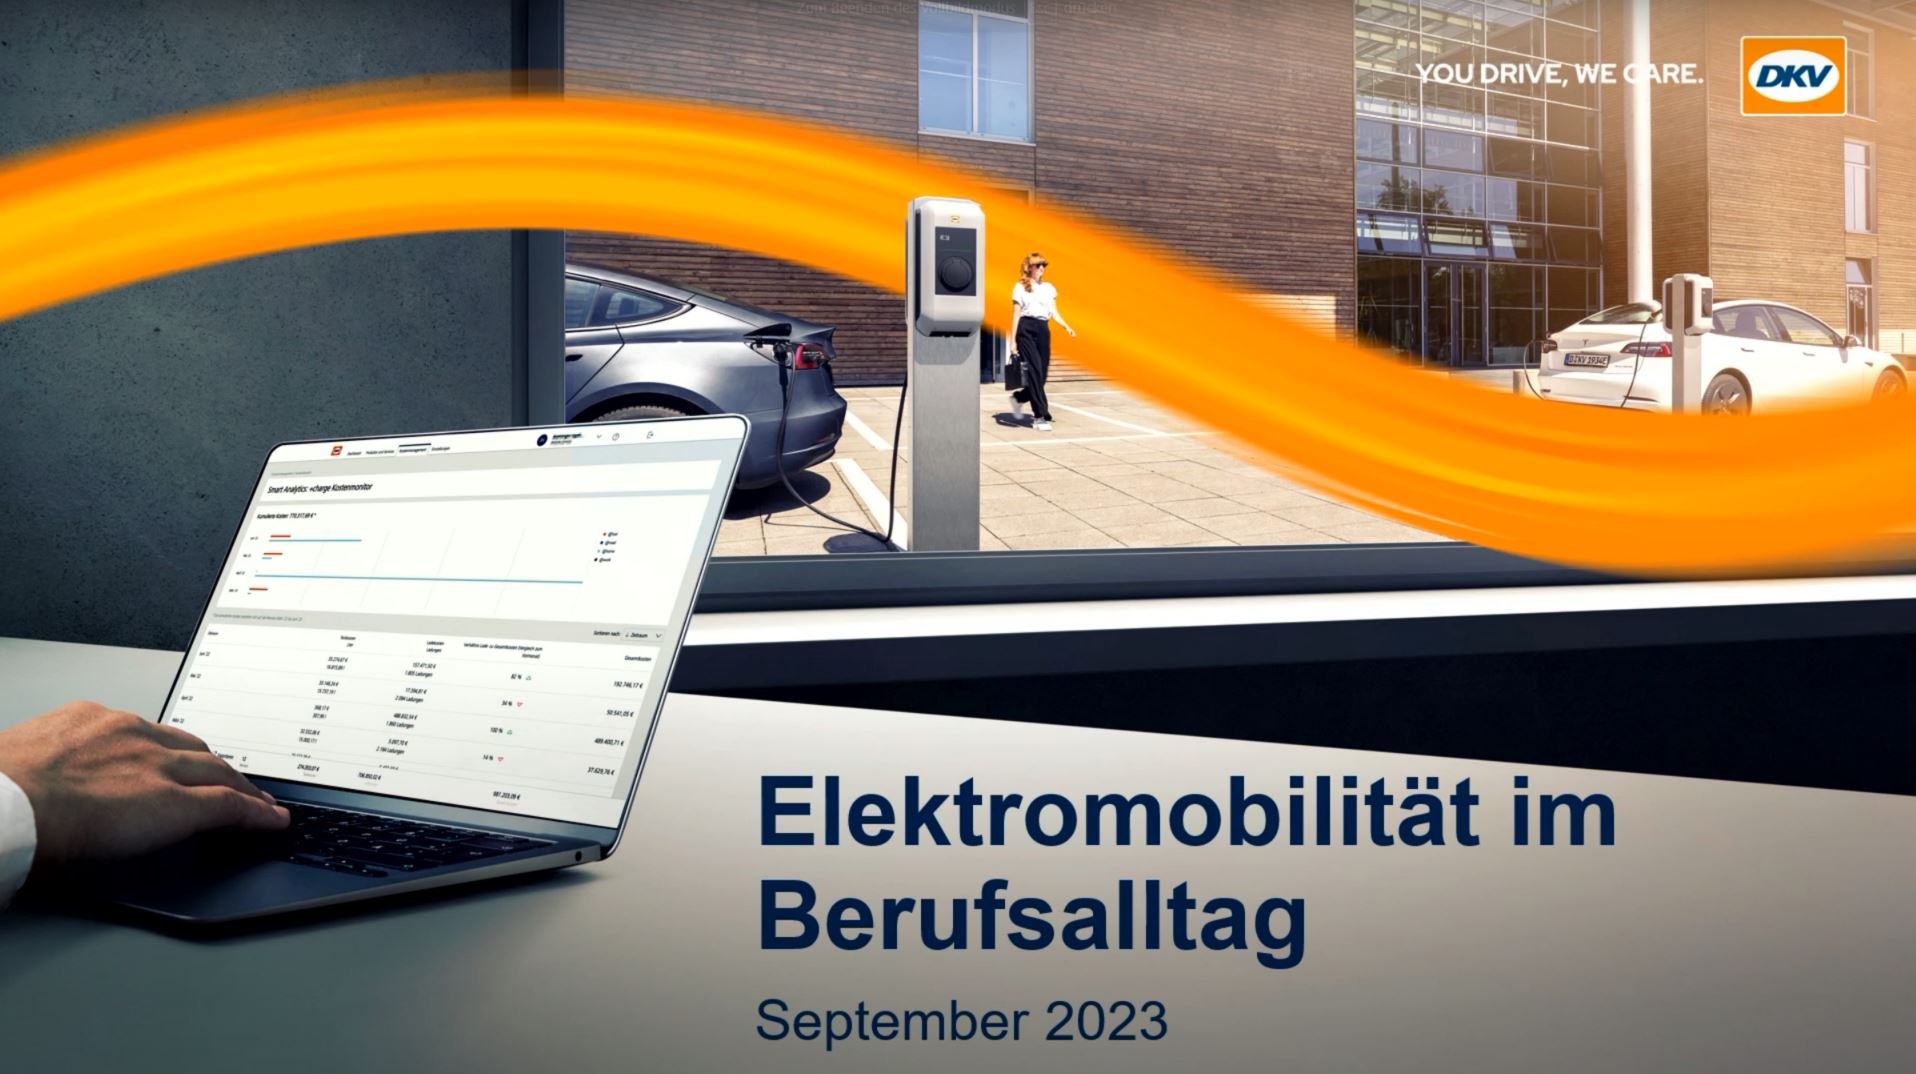 Elektromobilität,webinar,dkv